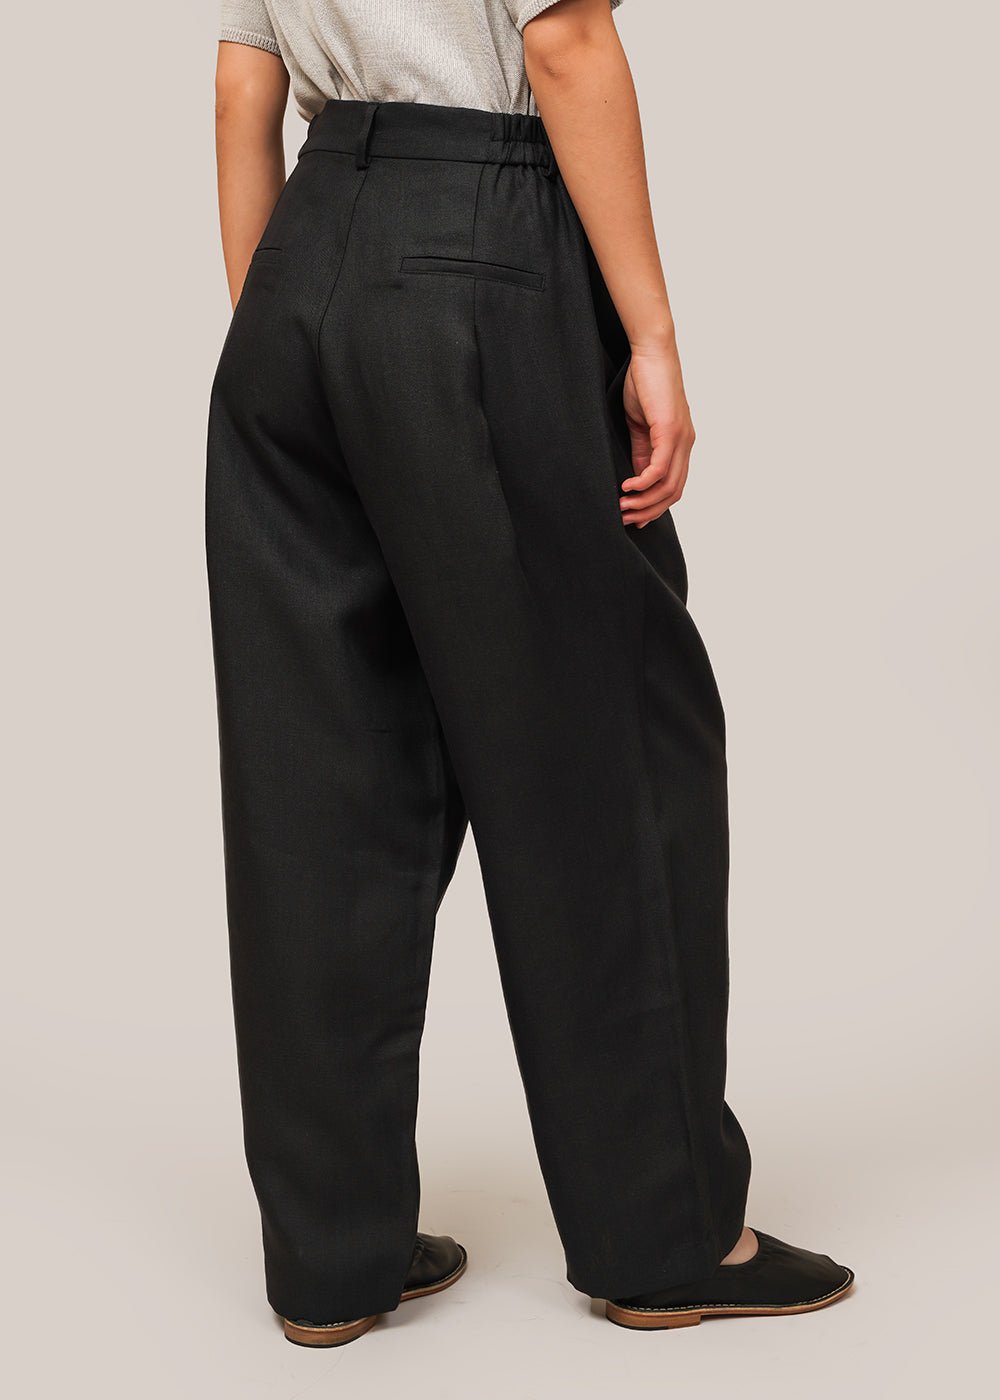 Lands' End Women's Size 10 Petite, Linen Market Pants, Black